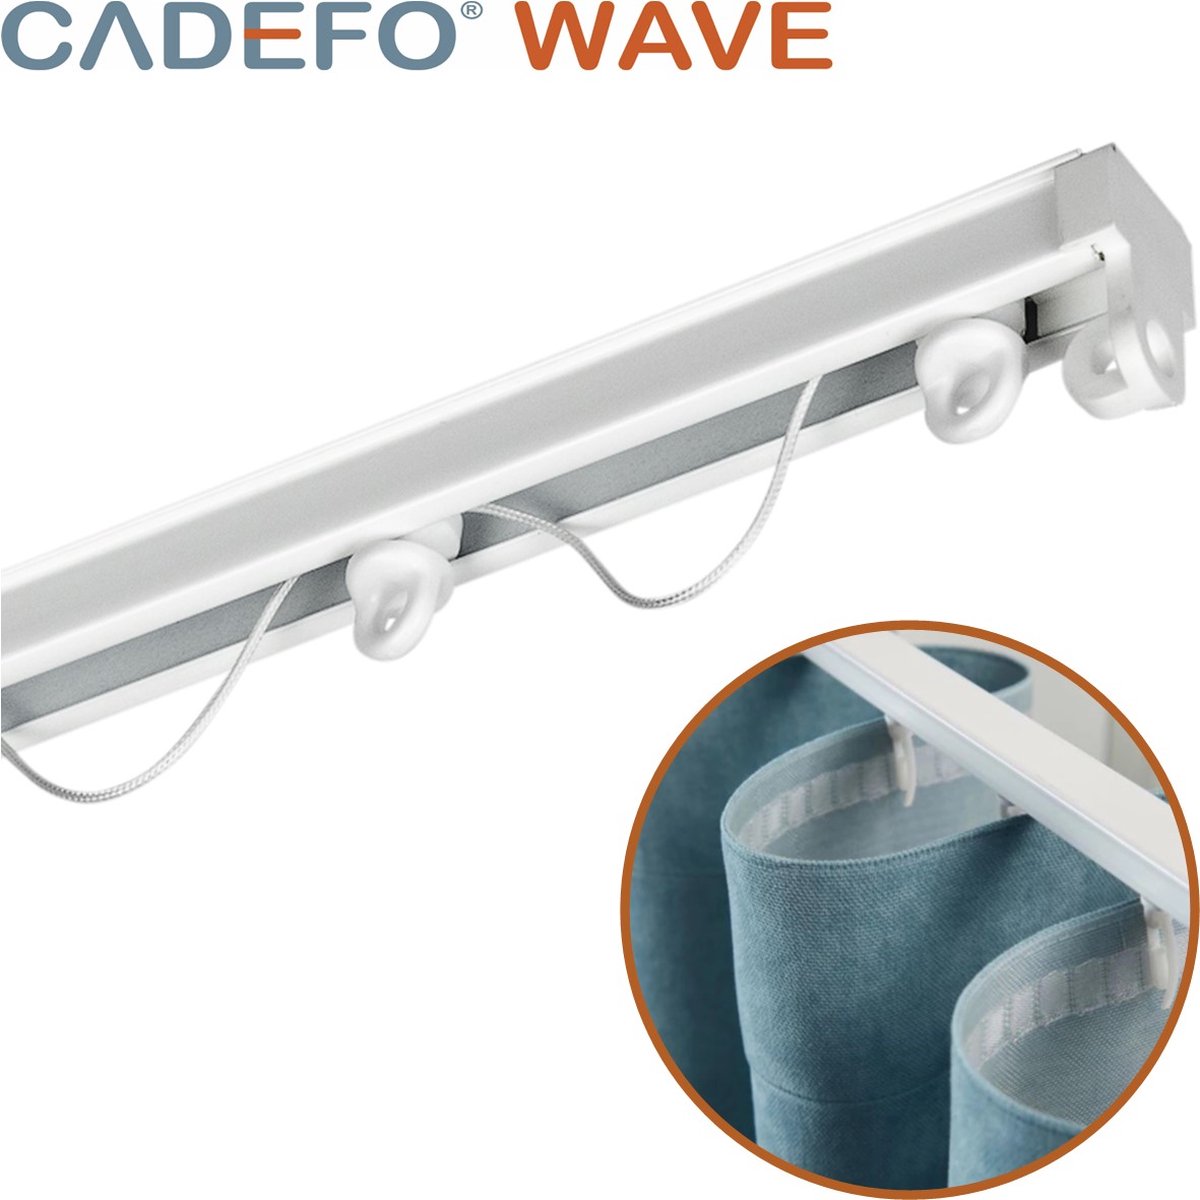 CADEFO WAVE (401 - 450 cm) Gordijnrails - Compleet op maat! - UIT 1 STUK - Leverbaar tot 6 meter - Plafondbevestiging - Lengte 405 cm